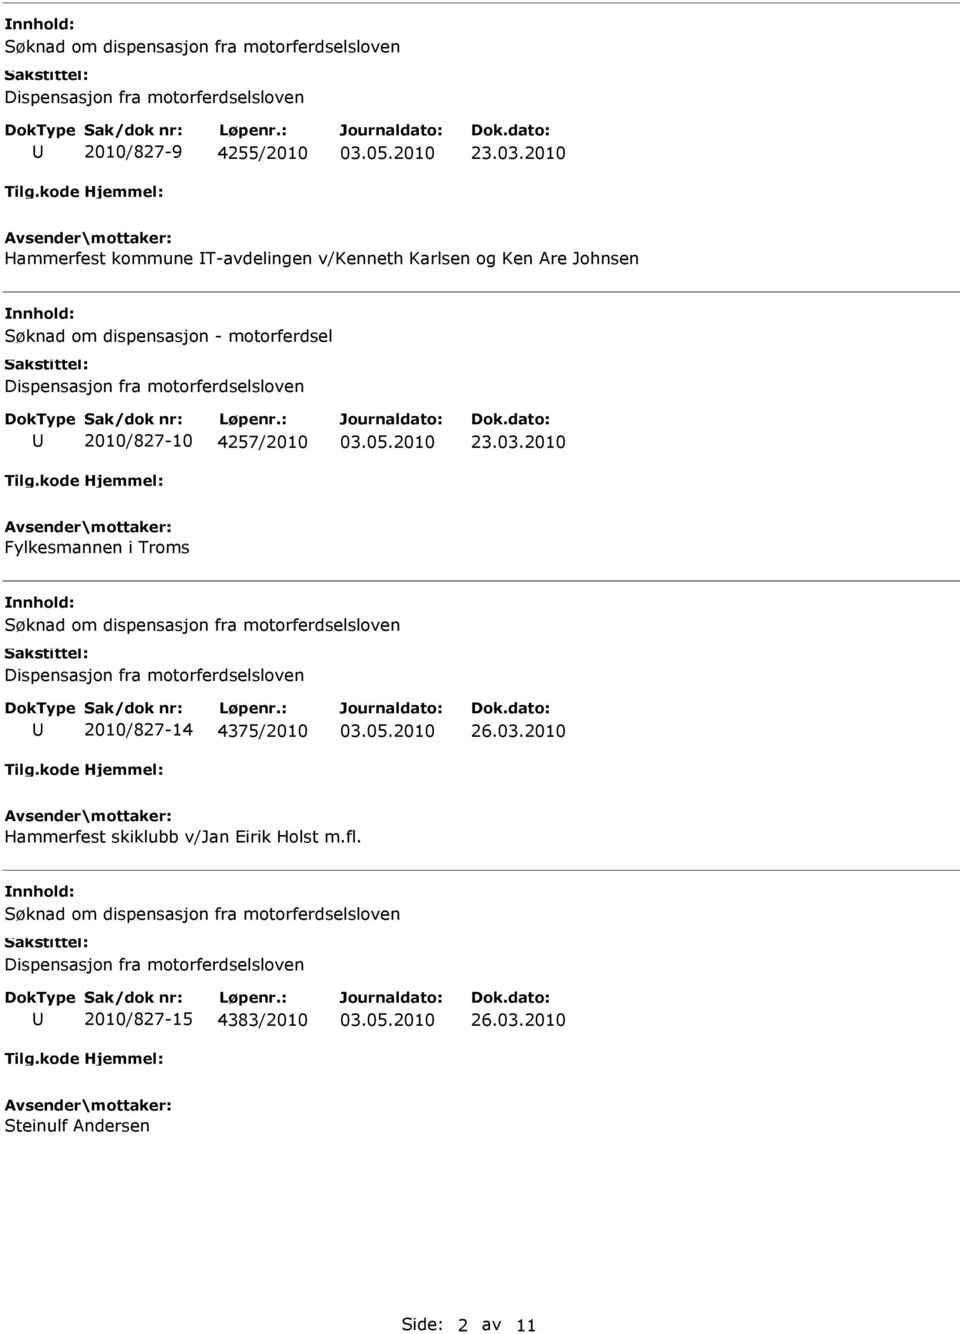 Søknad om dispensasjon fra motorferdselsloven 2010/827-14 4375/2010 26.03.